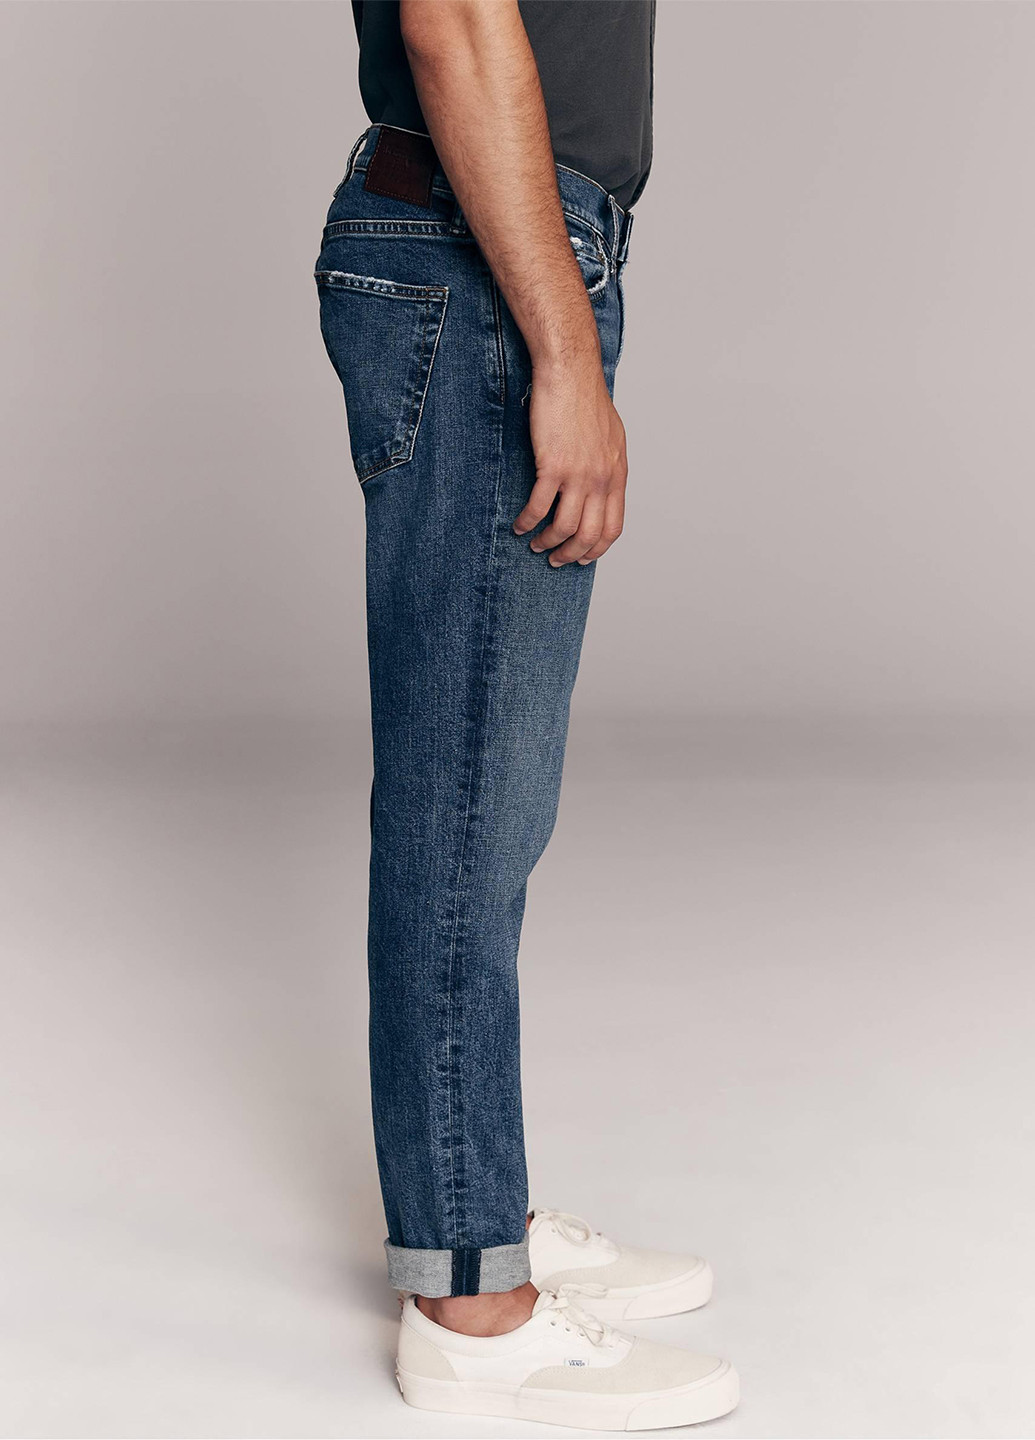 Синие демисезонные скинни джинсы Abercrombie & Fitch